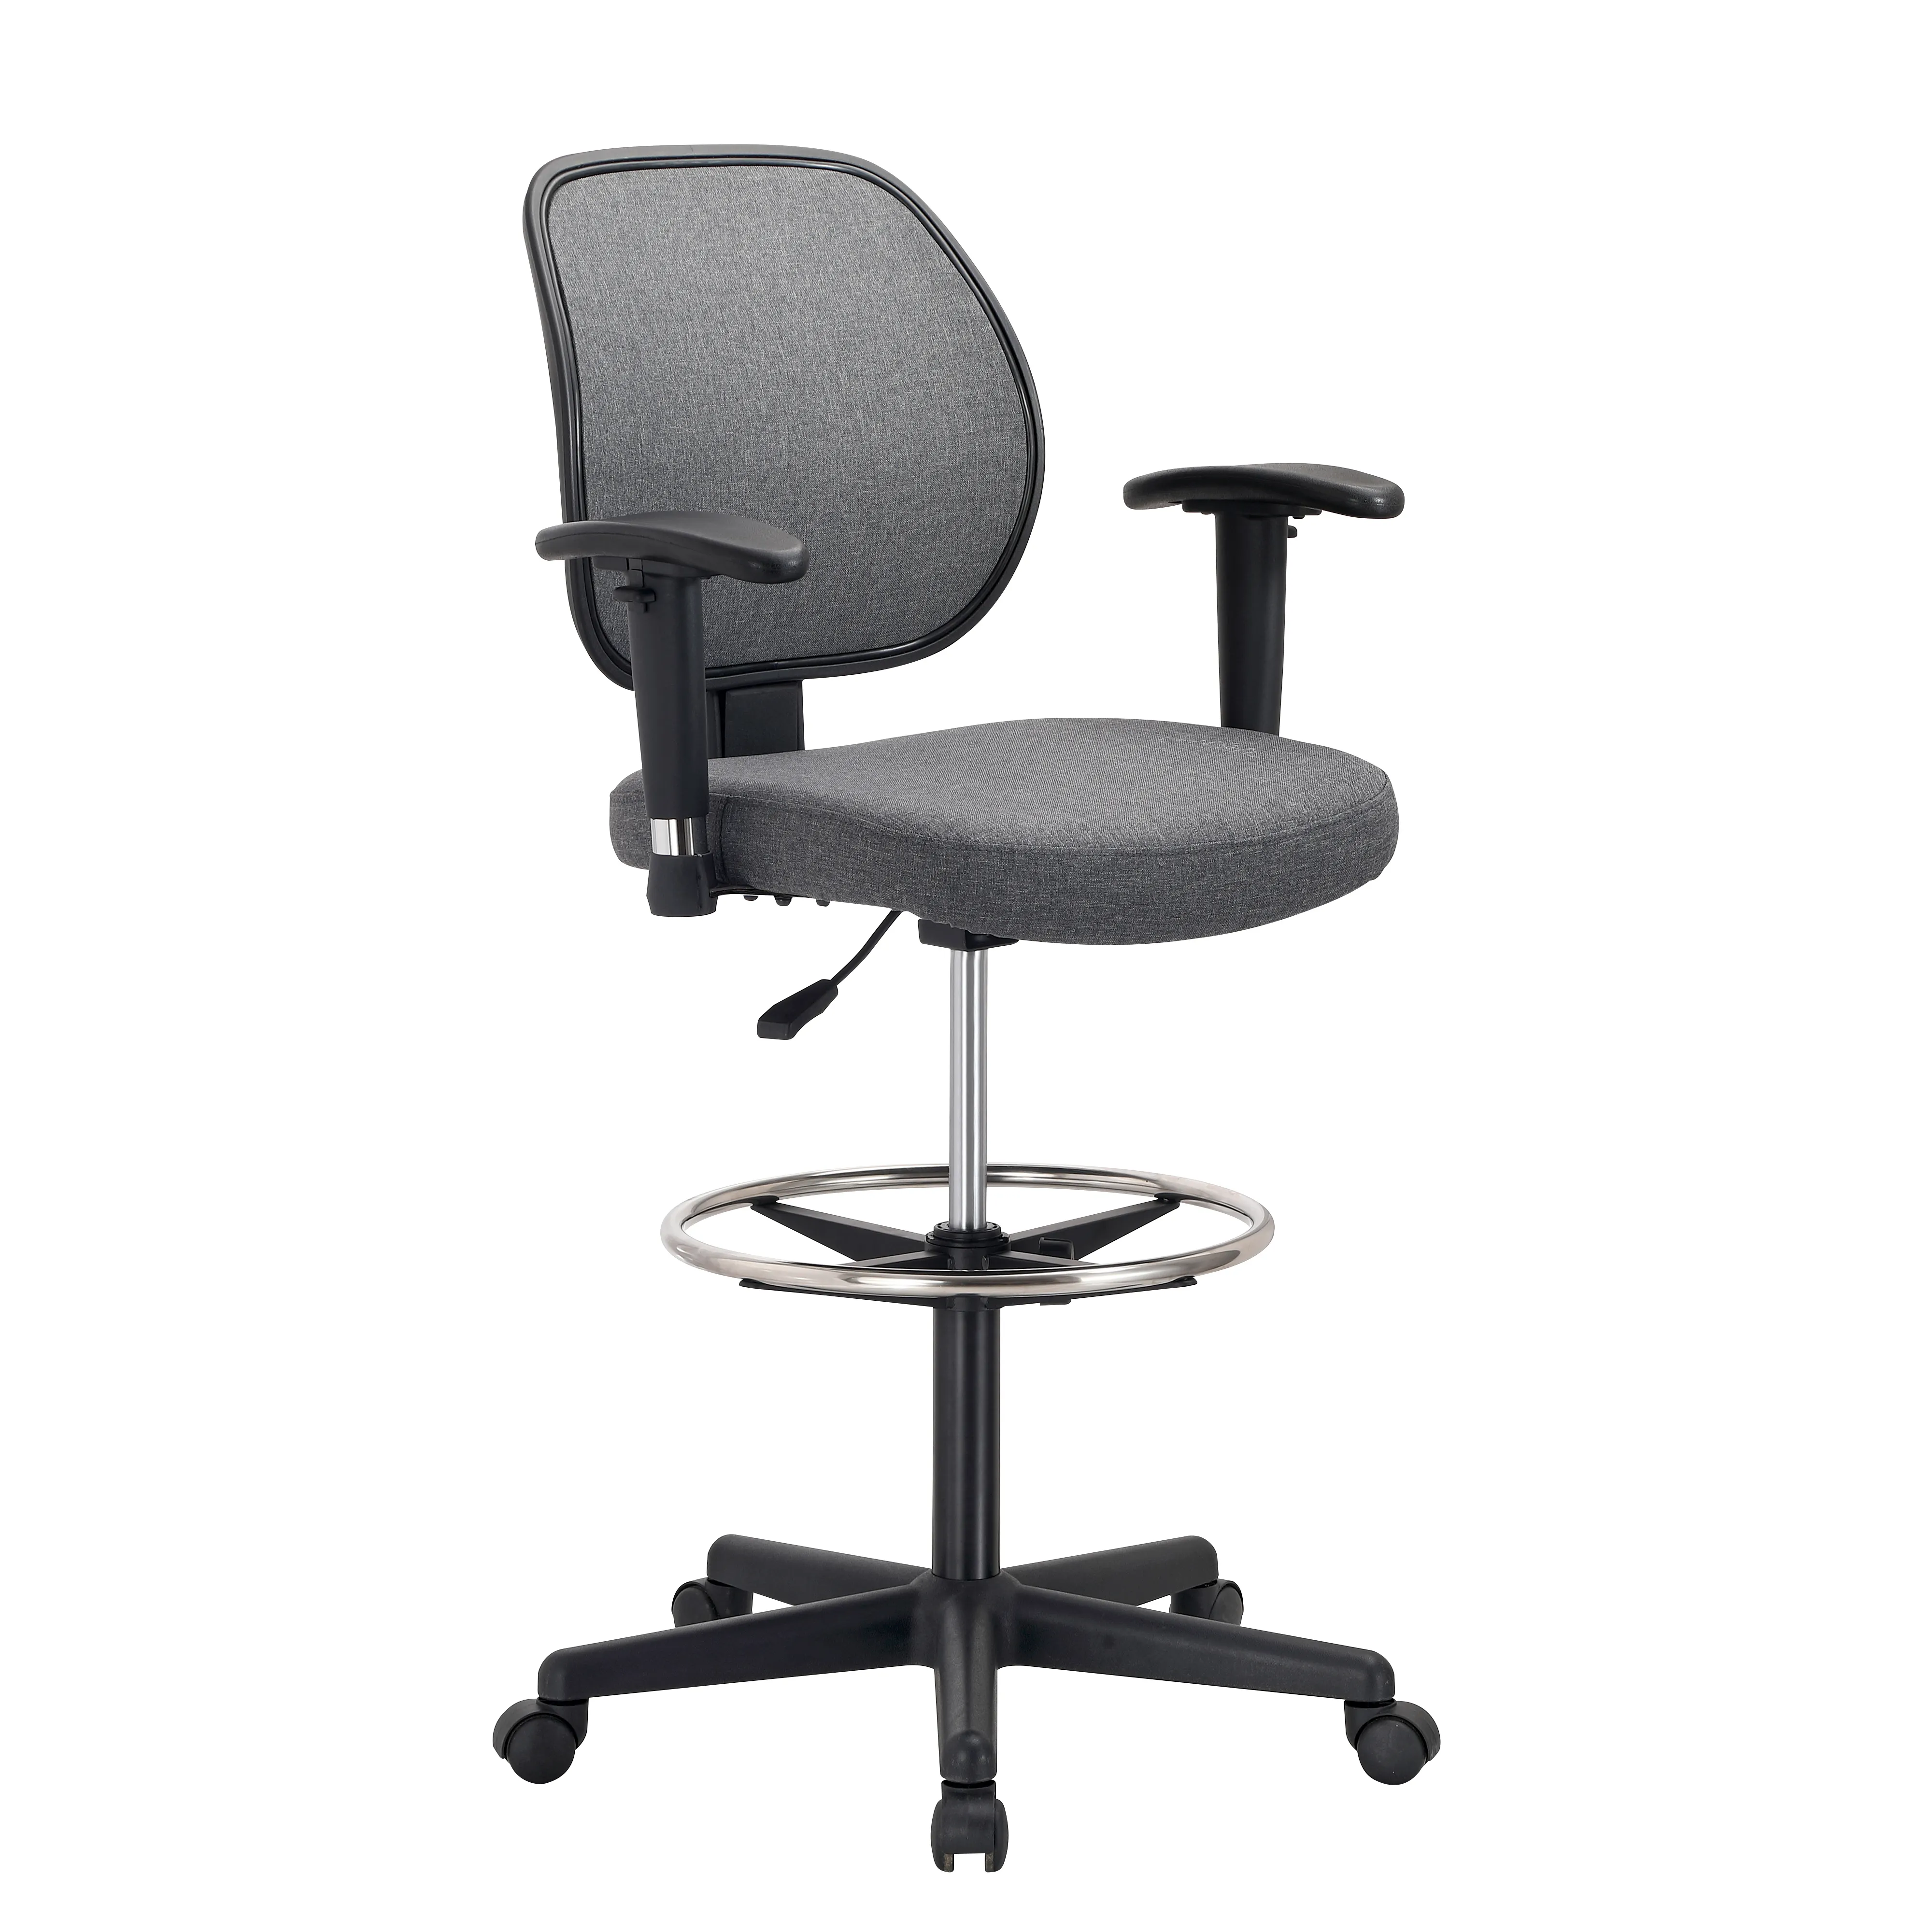 Лидер продаж, регулируемое по высоте вращающееся кресло, сетчатая спинка, мягкая ткань, обивка, барный стул, высокий стул, чертежный стул